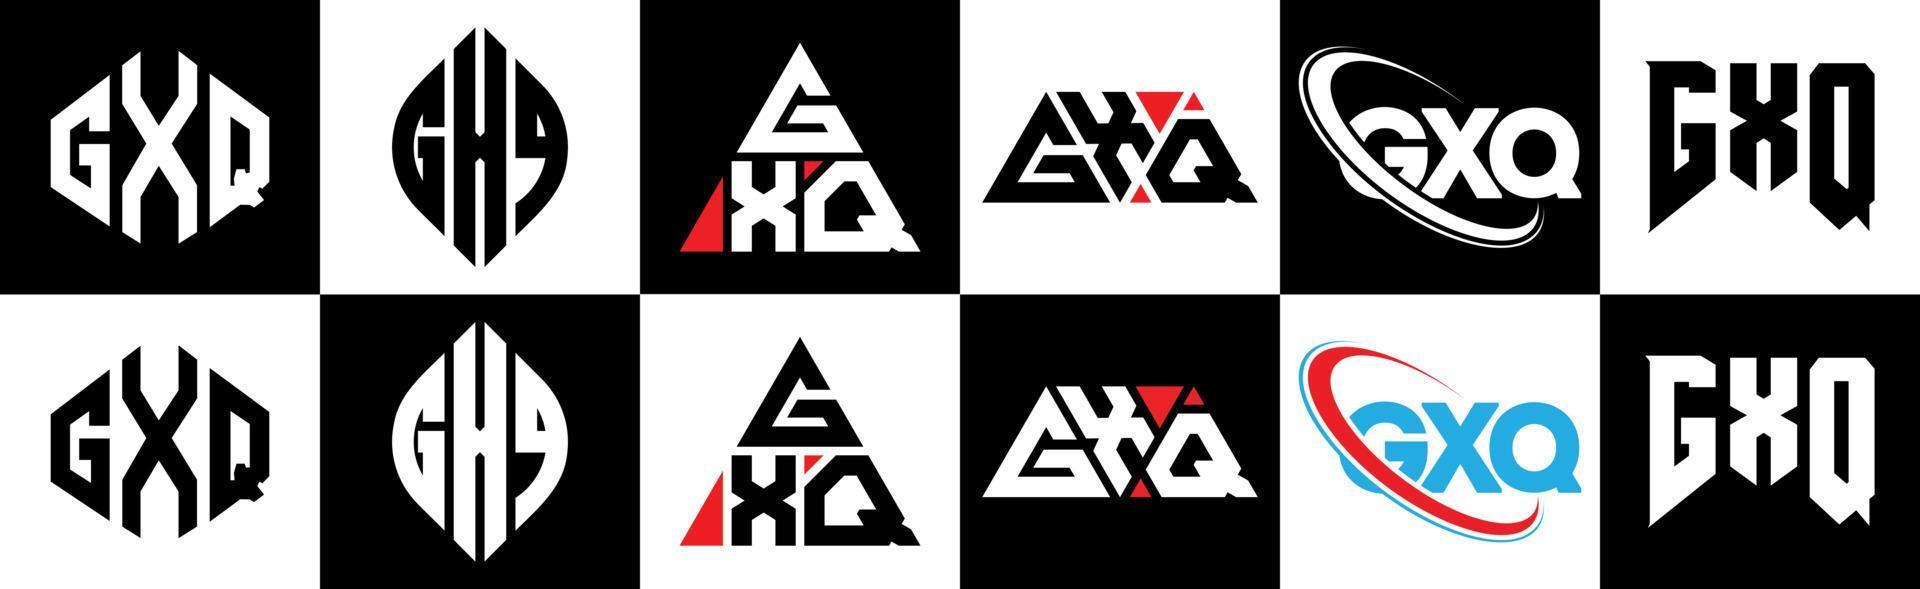 gxq-Buchstaben-Logo-Design in sechs Stilen. gxq Polygon, Kreis, Dreieck, Sechseck, flacher und einfacher Stil mit schwarz-weißem Buchstabenlogo in einer Zeichenfläche. gxq minimalistisches und klassisches Logo vektor